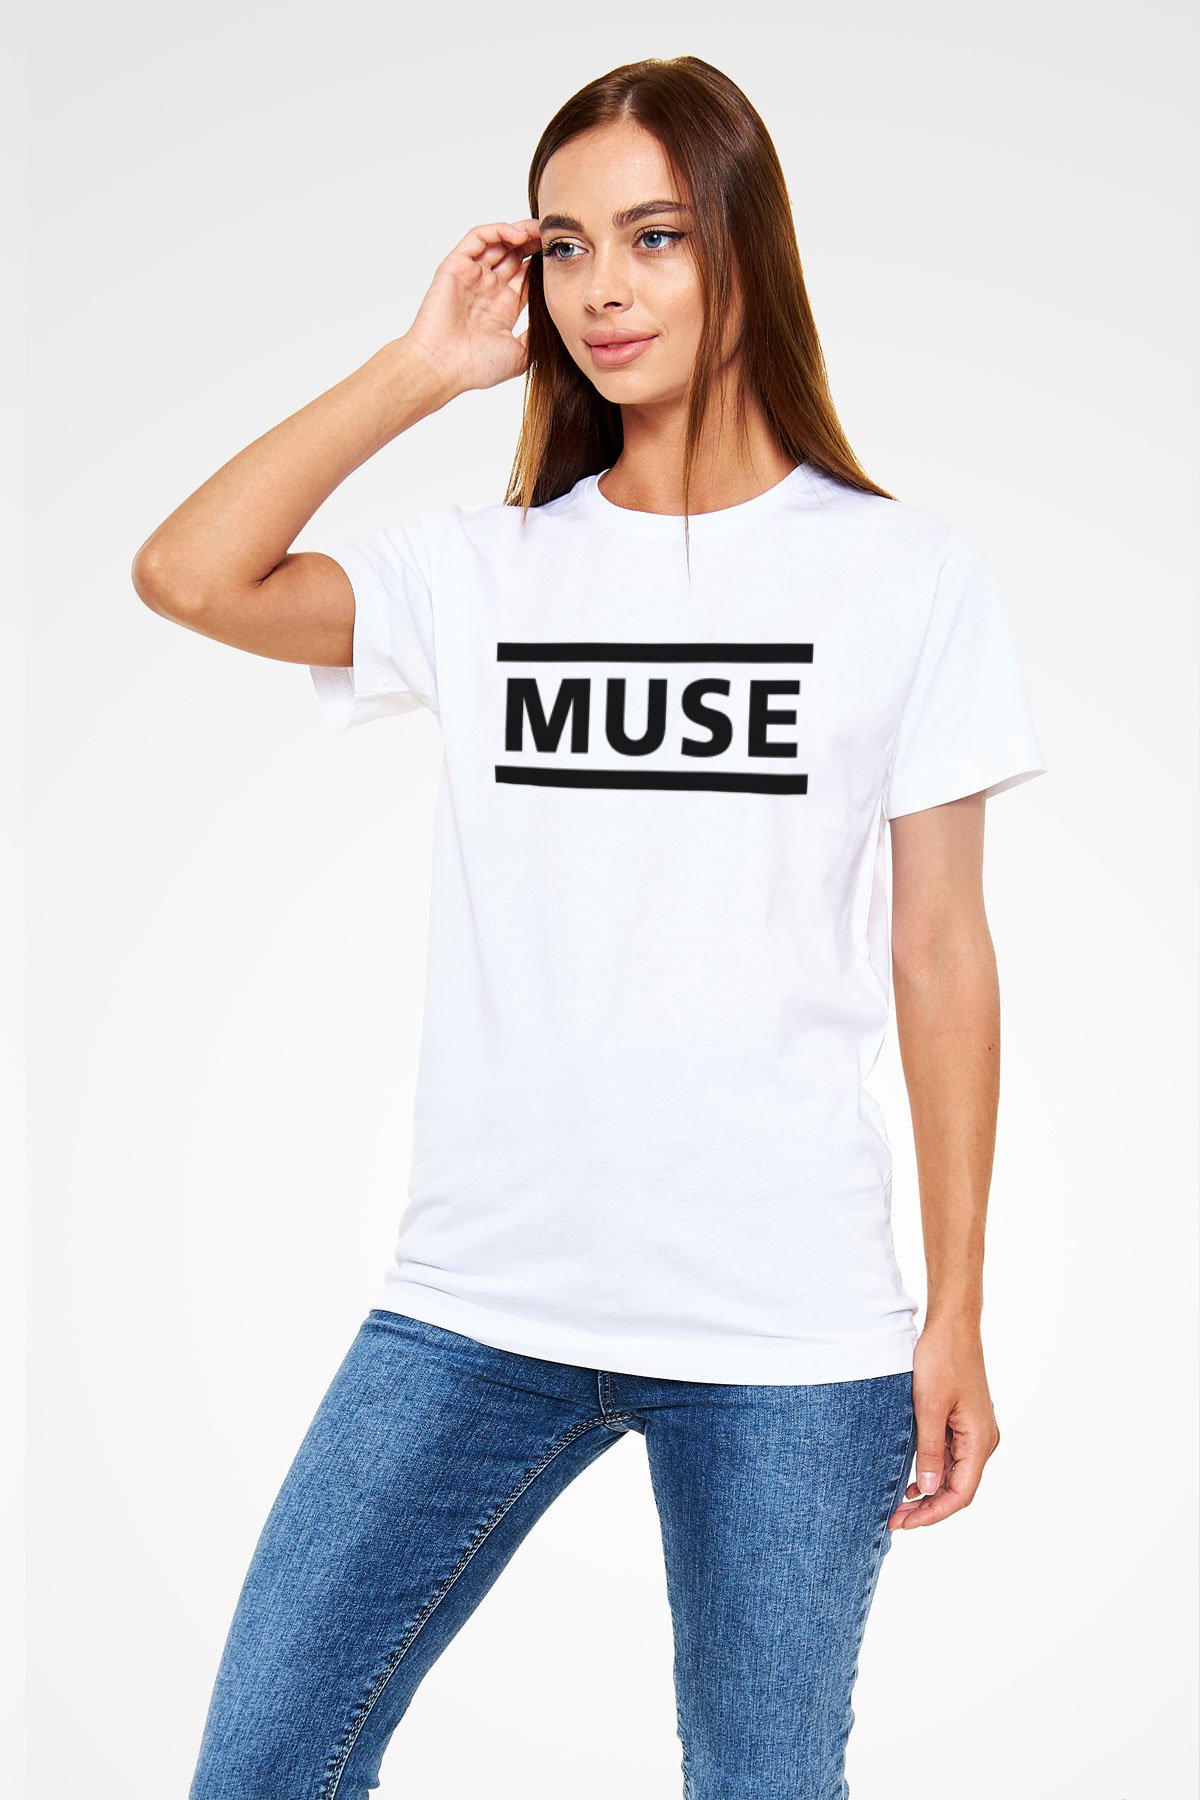 Muse White Unisex T-Shirt - Tees - Shirts